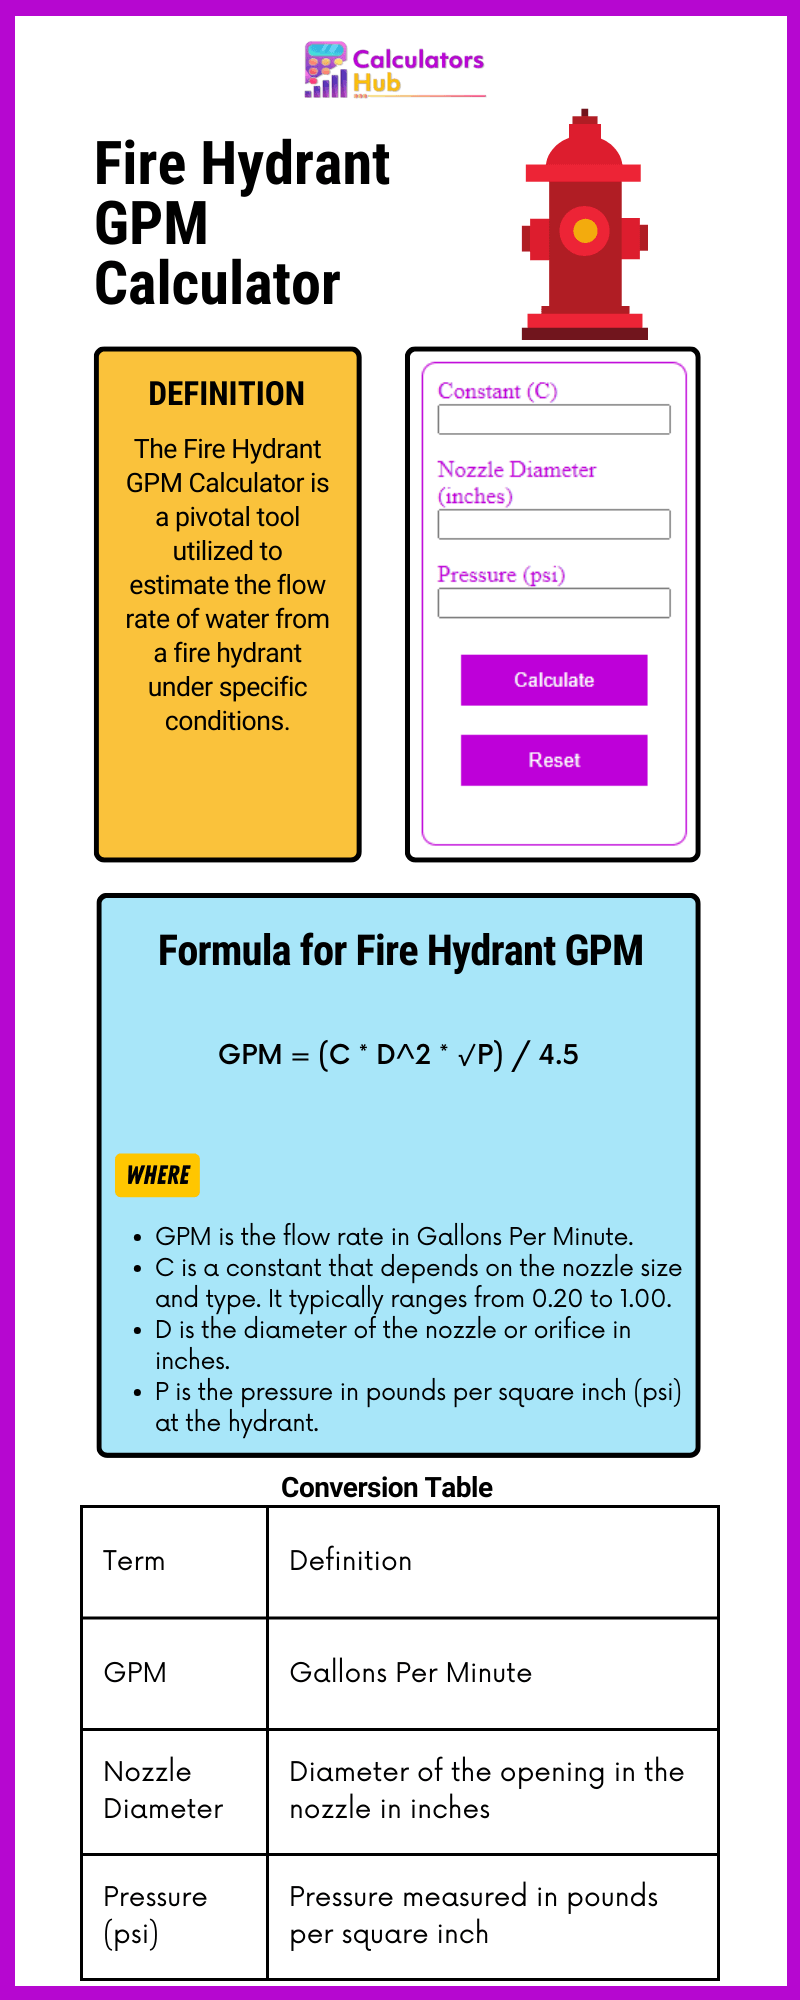 Fire Hydrant GPM Calculator